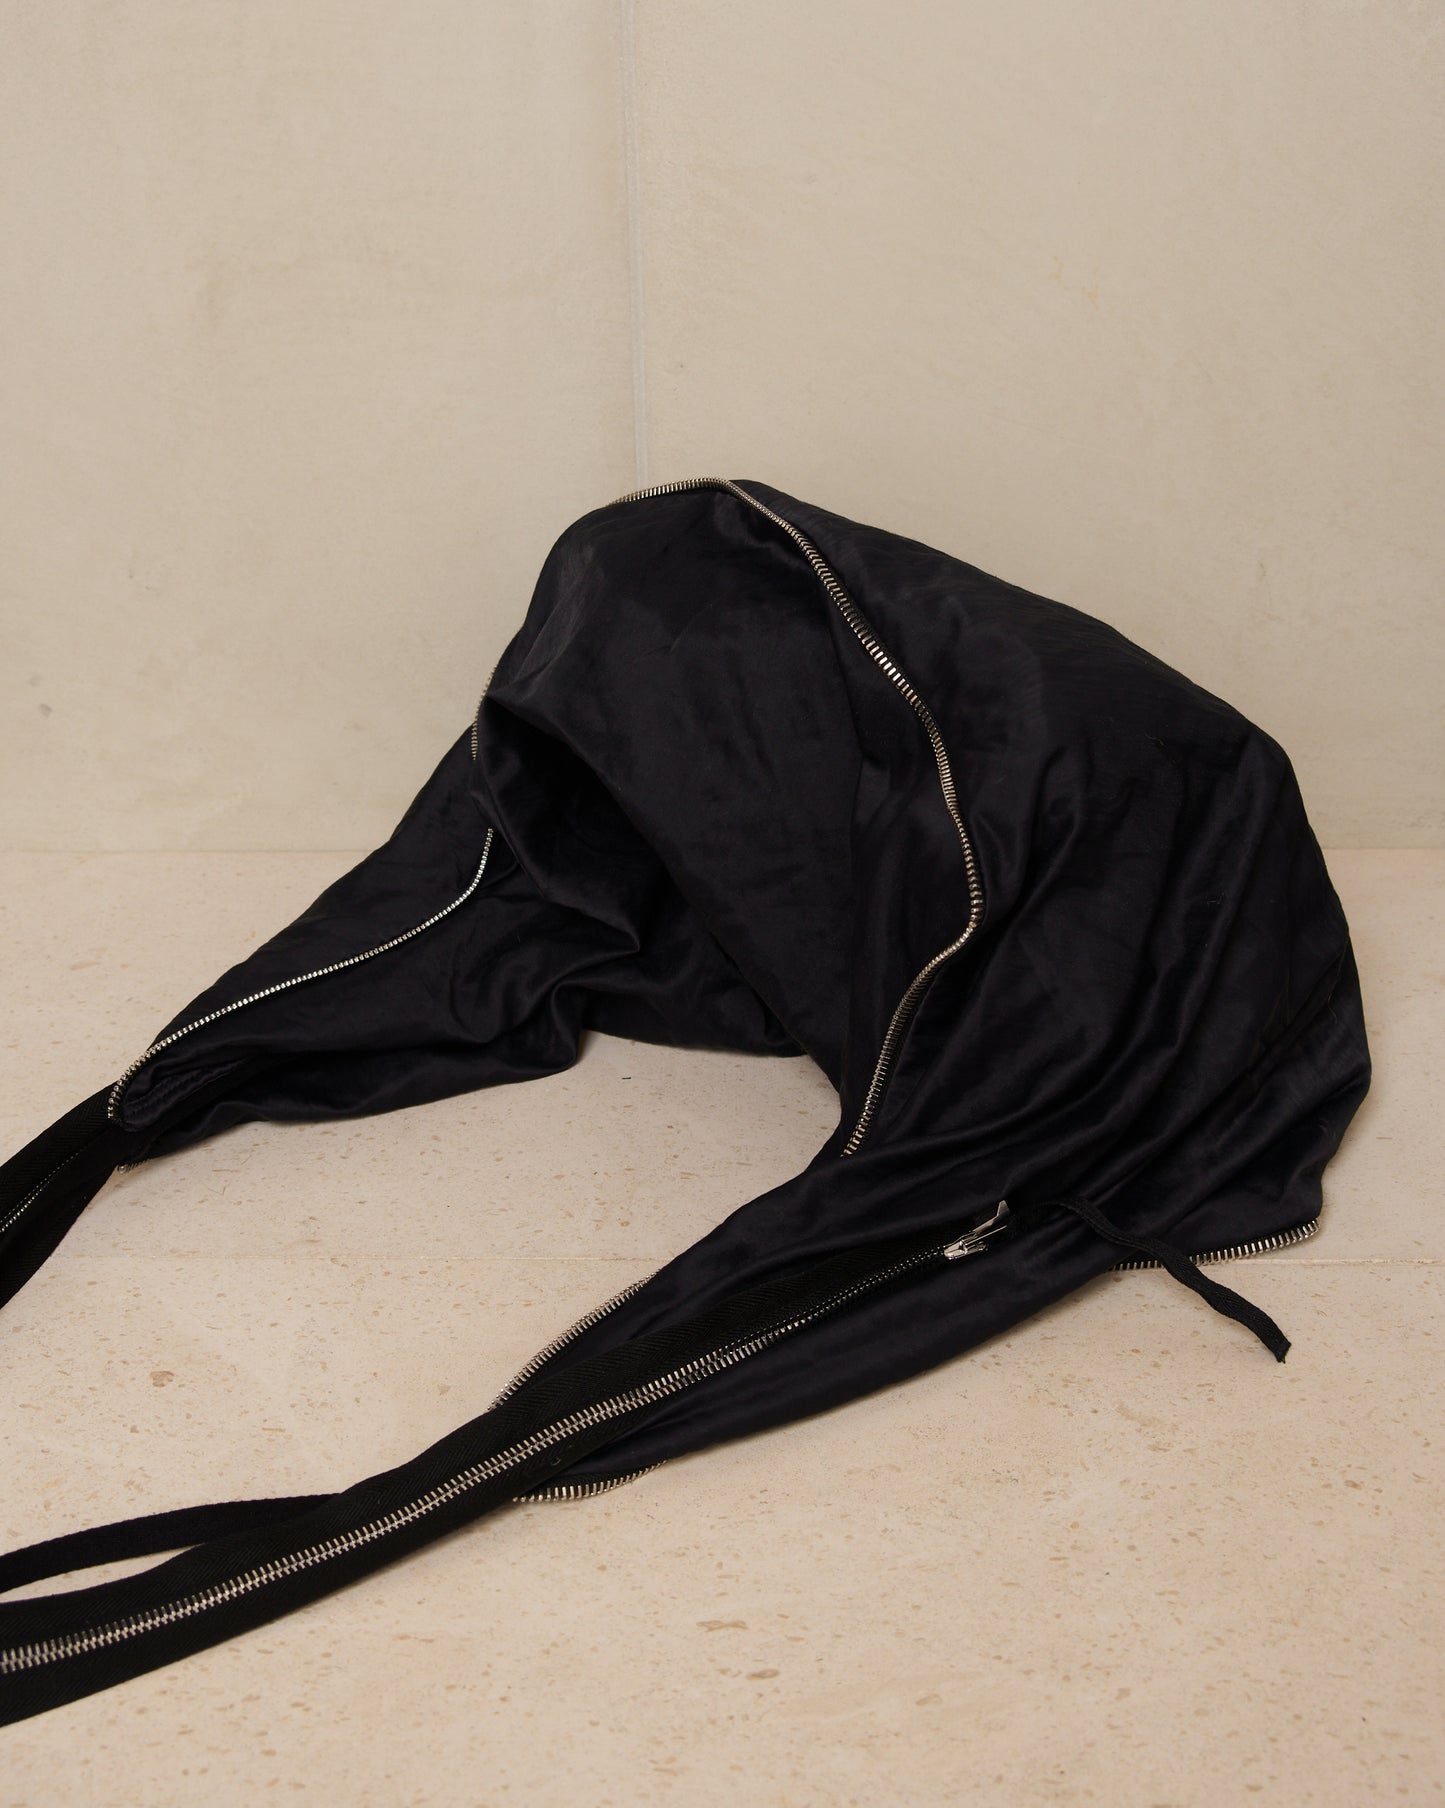 Pebble Black Cailleach Bag